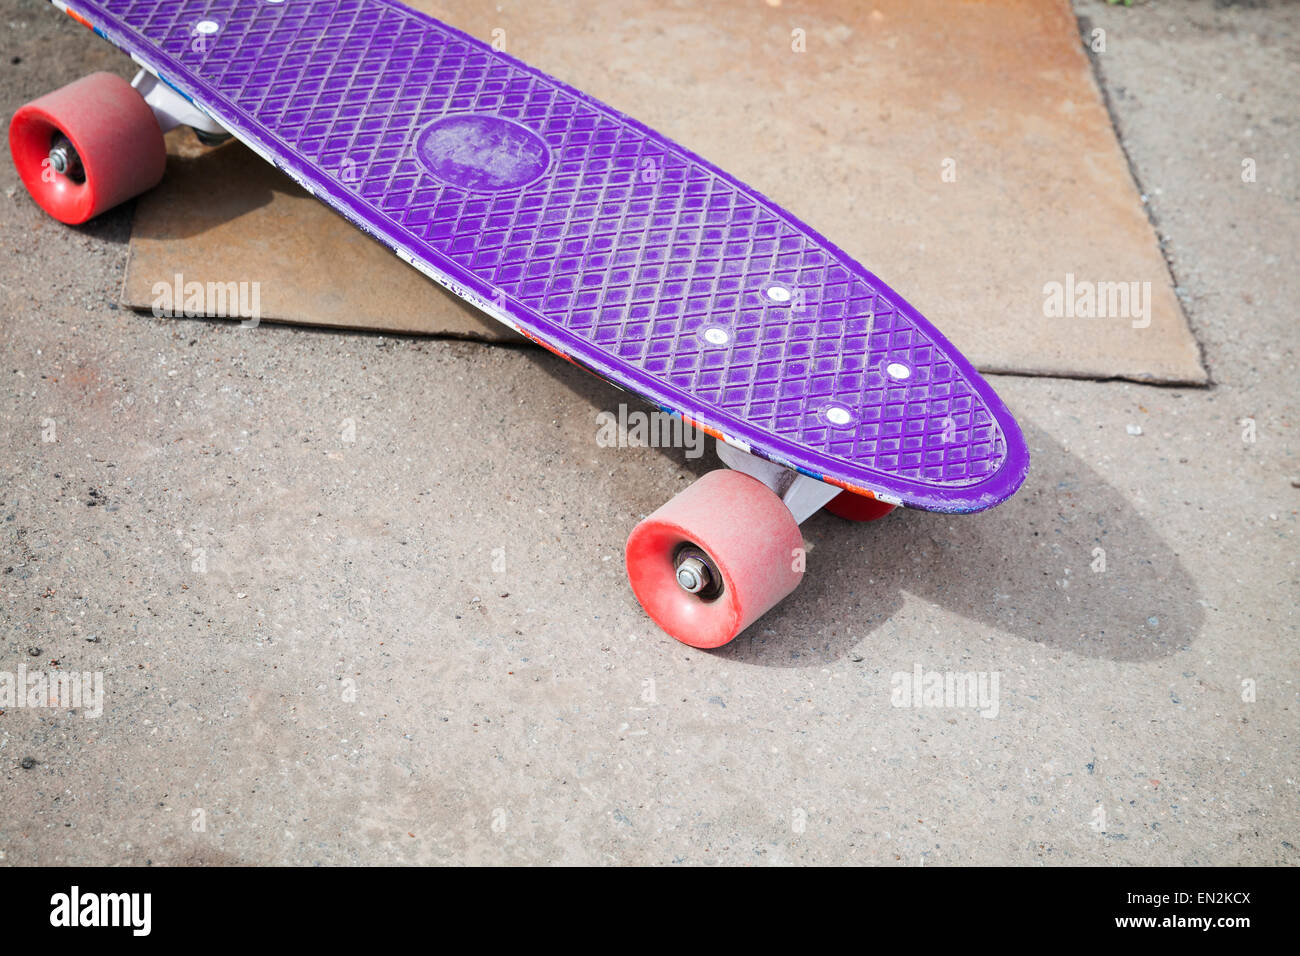 Petite taille en plastique violet moderne skateboard, repose sur une chaussée urbaine d'asphalte Banque D'Images